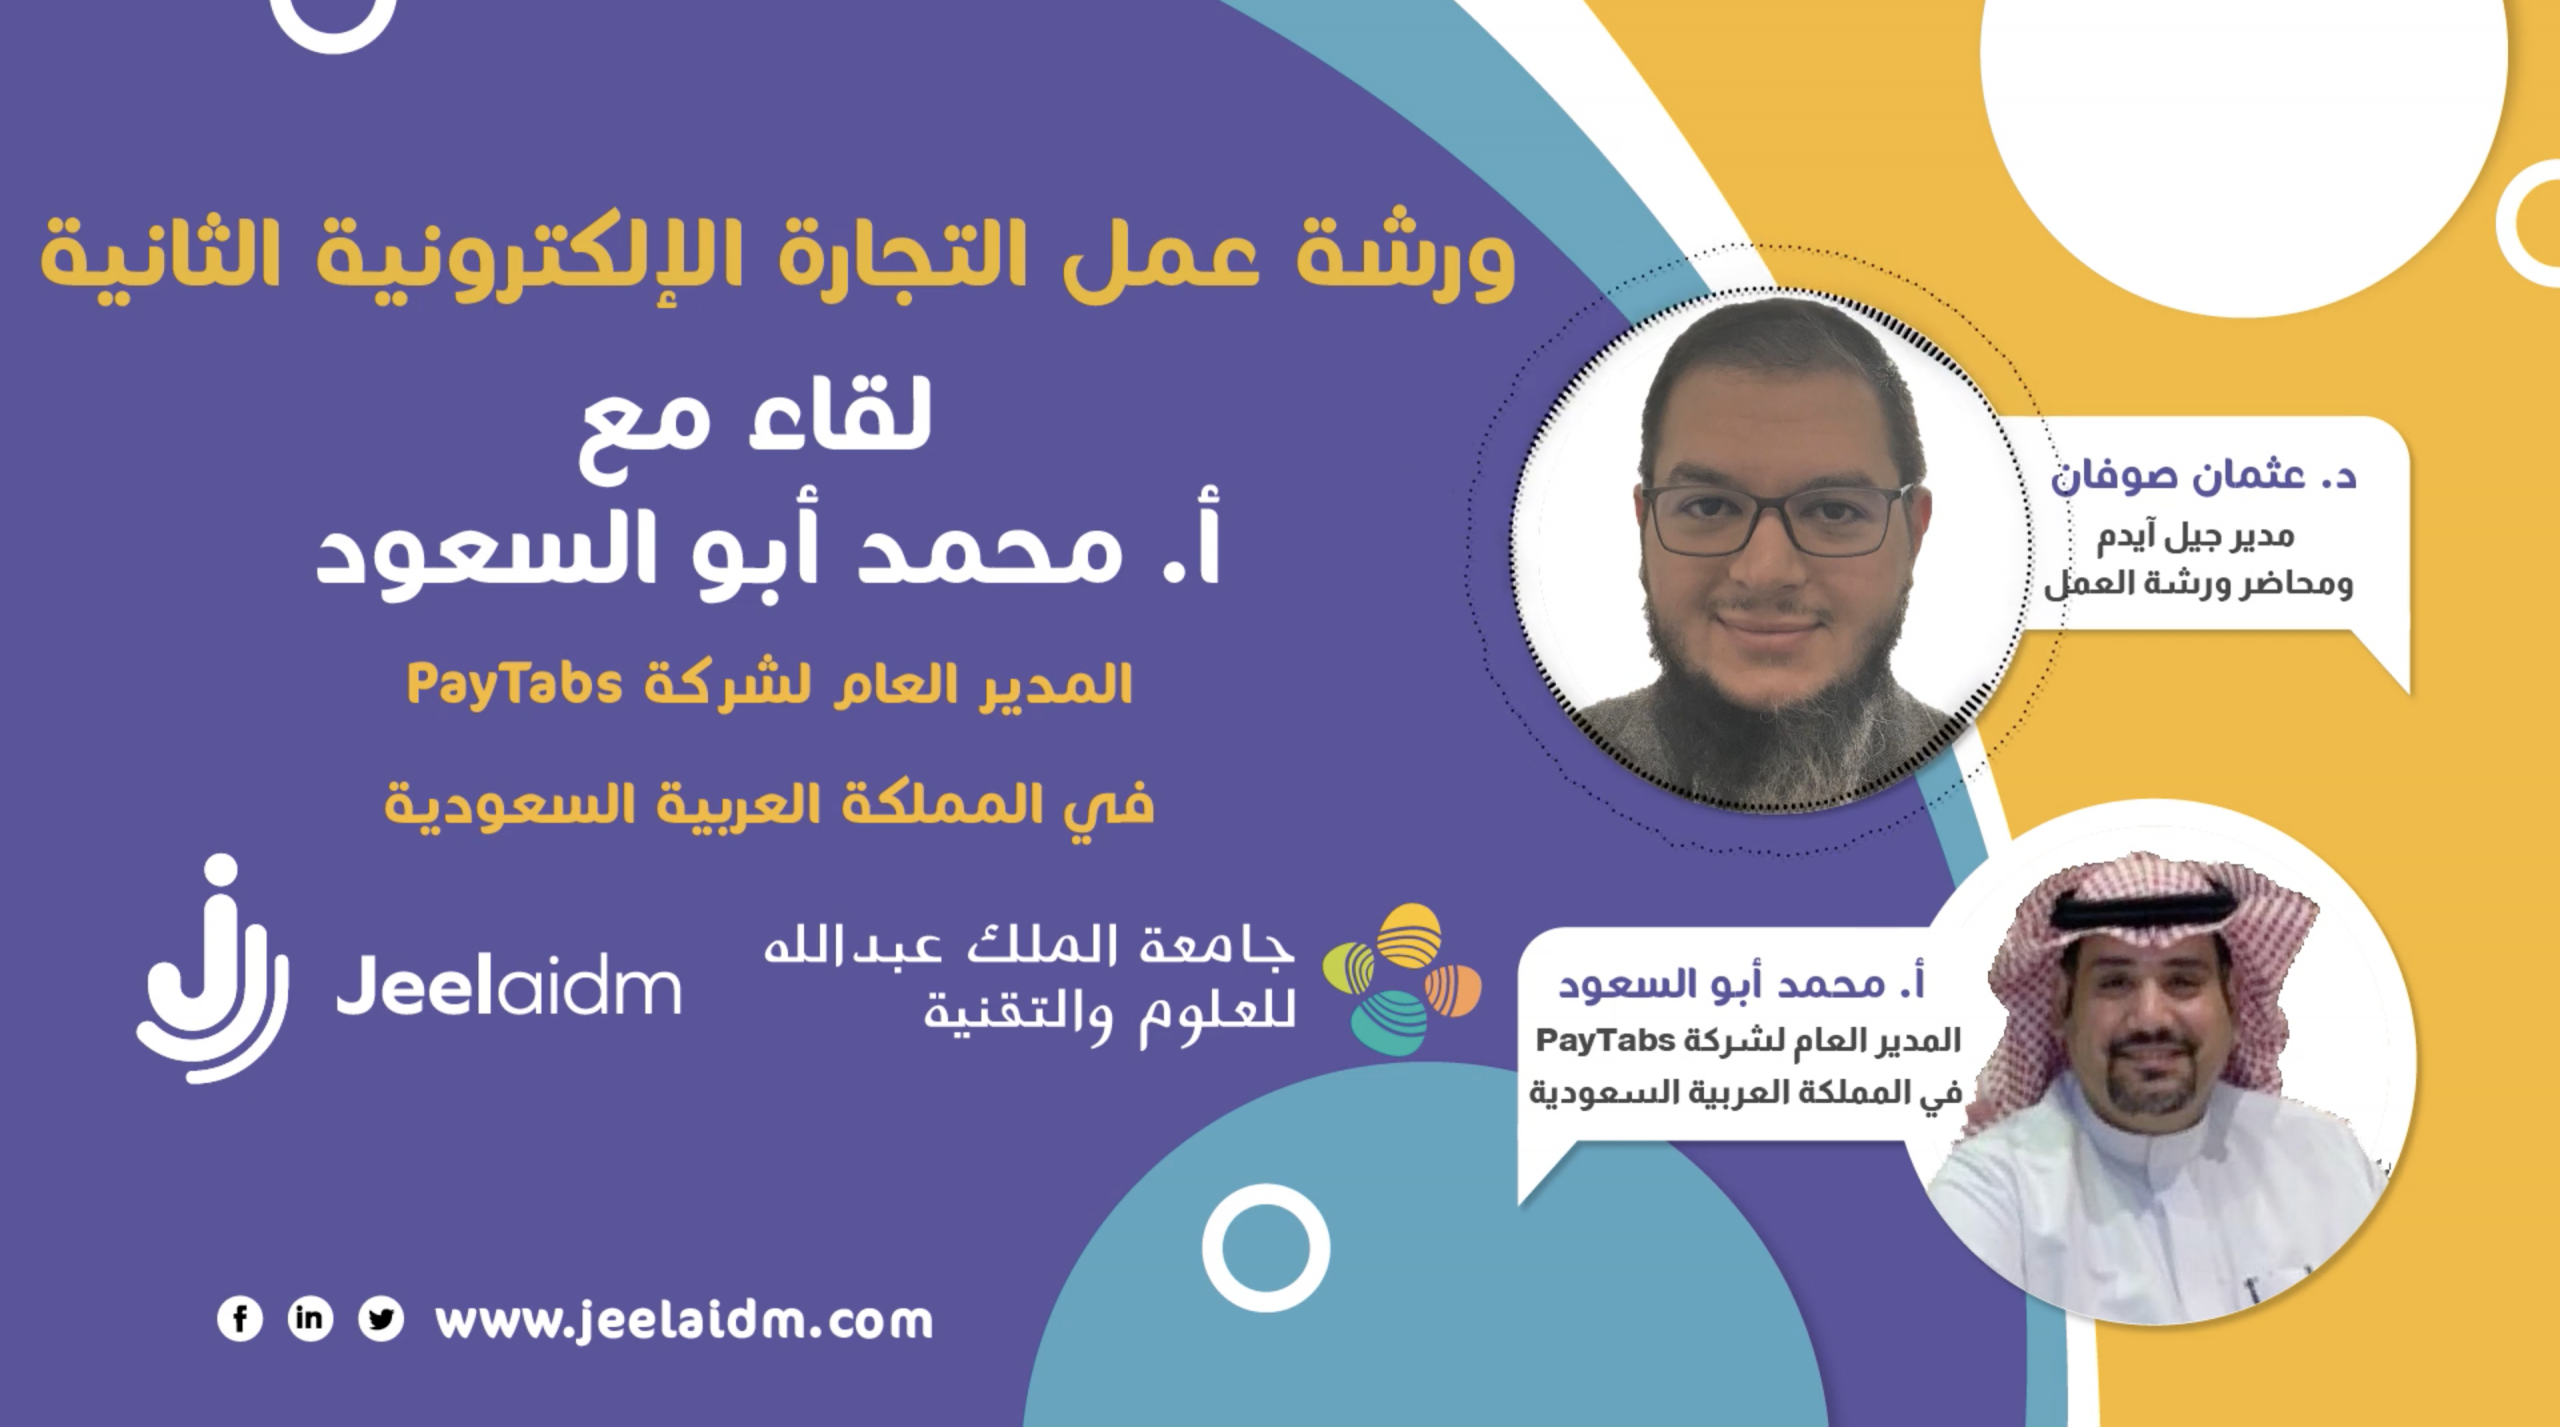 لقاء مع أ. محمد أبو السعود حول حلول الدفع الرقمية في السعودية